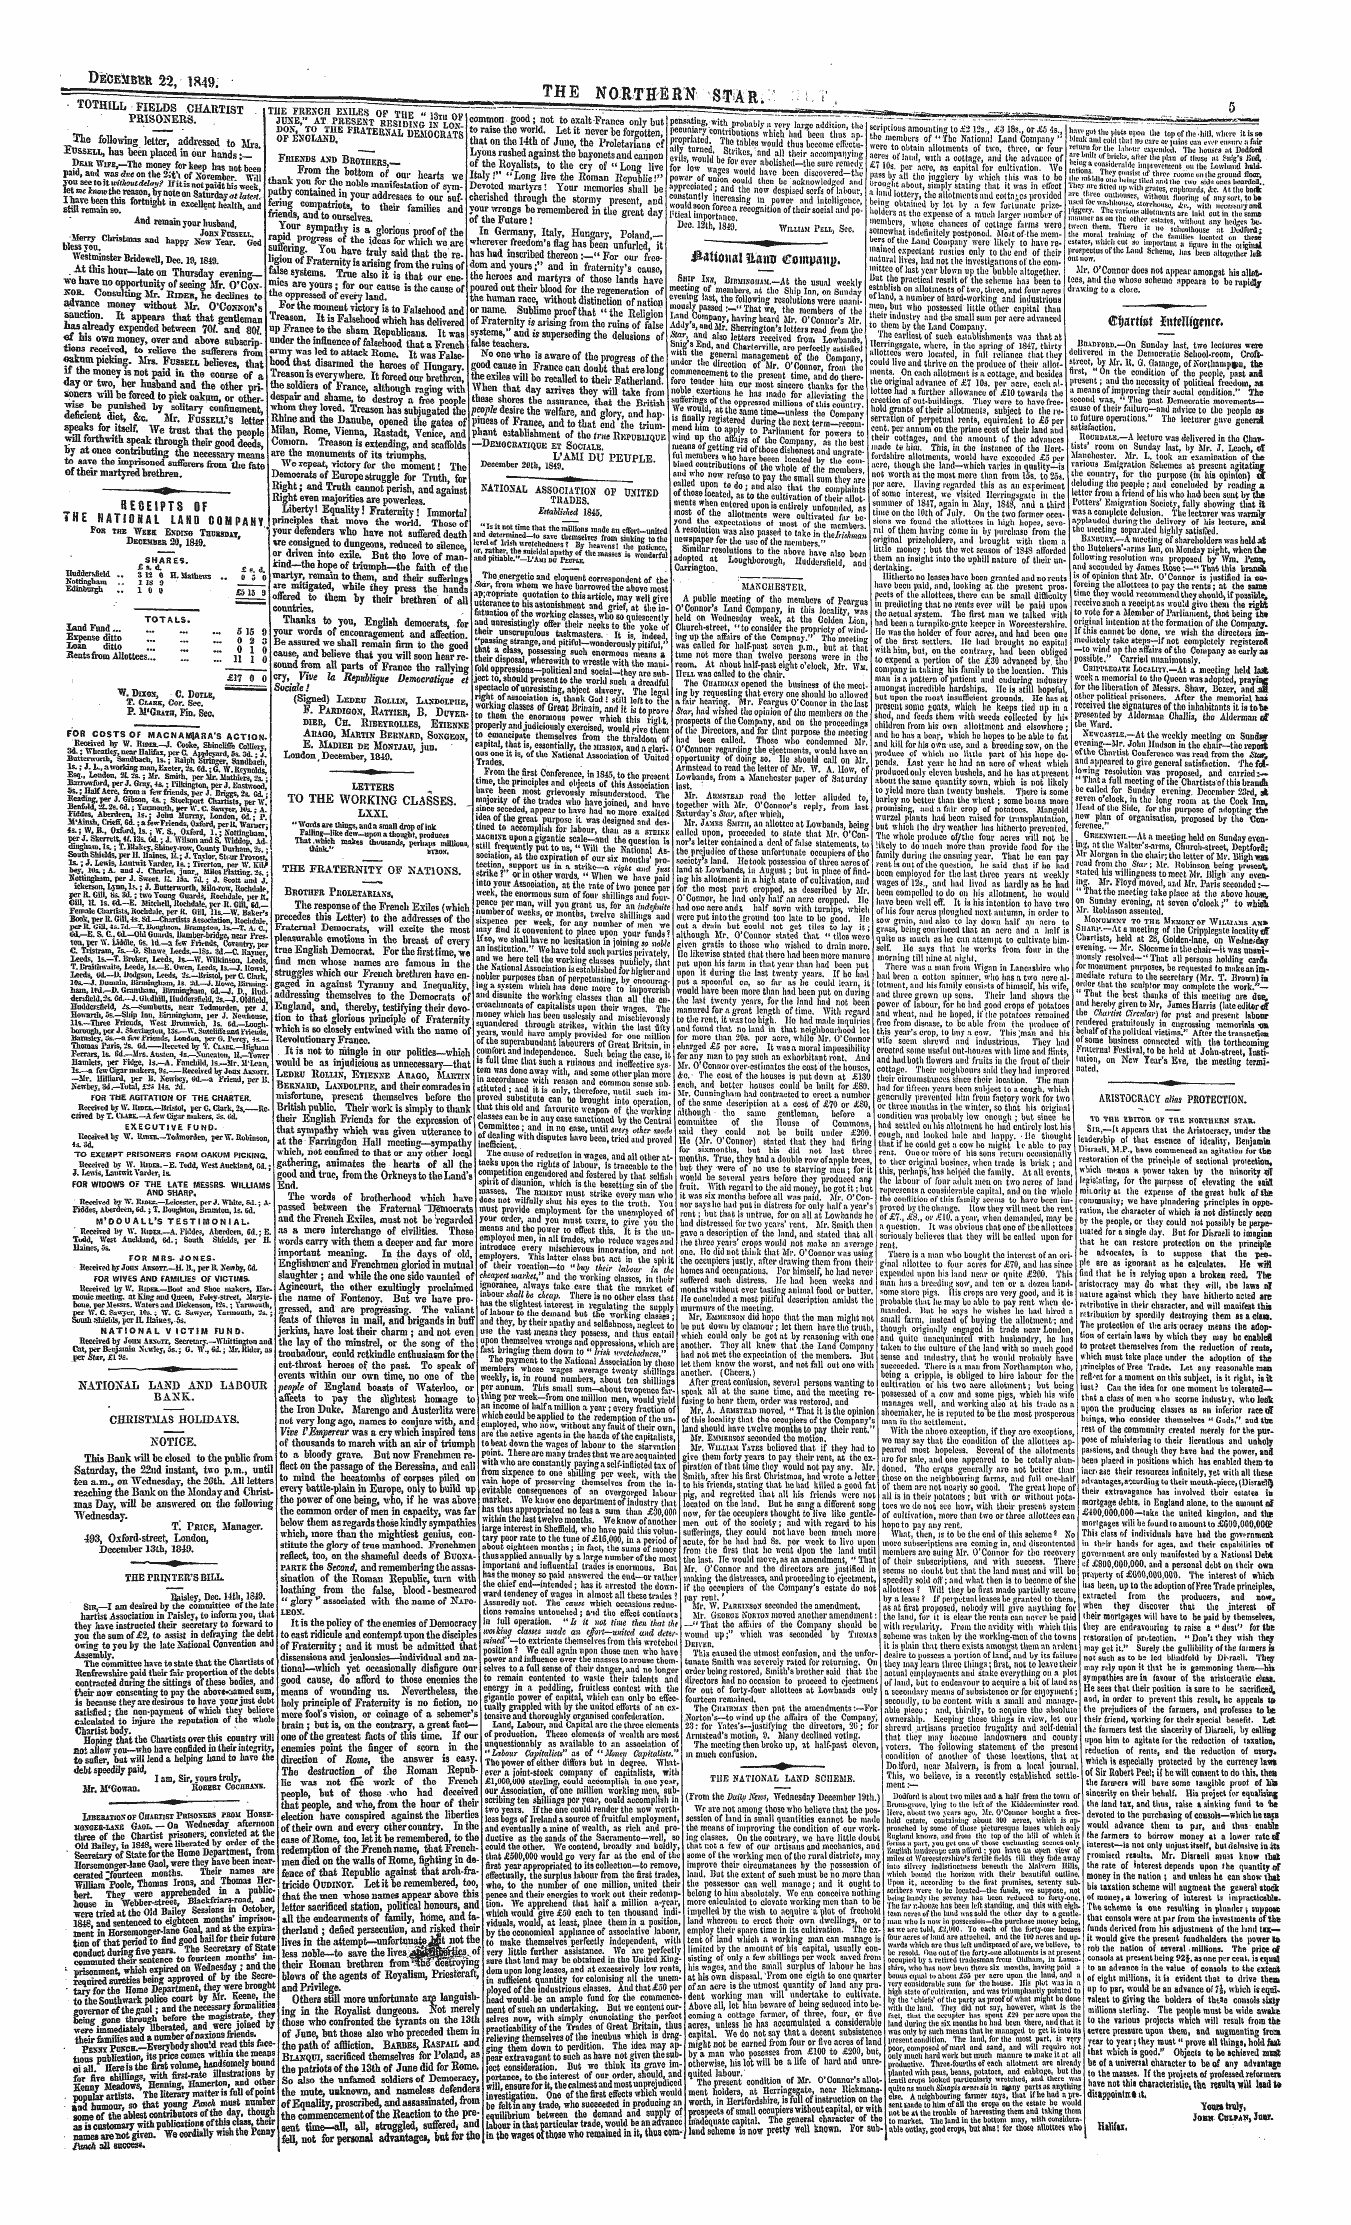 Northern Star (1837-1852): jS F Y, 1st edition - ©Ijartist Totttntgencr.